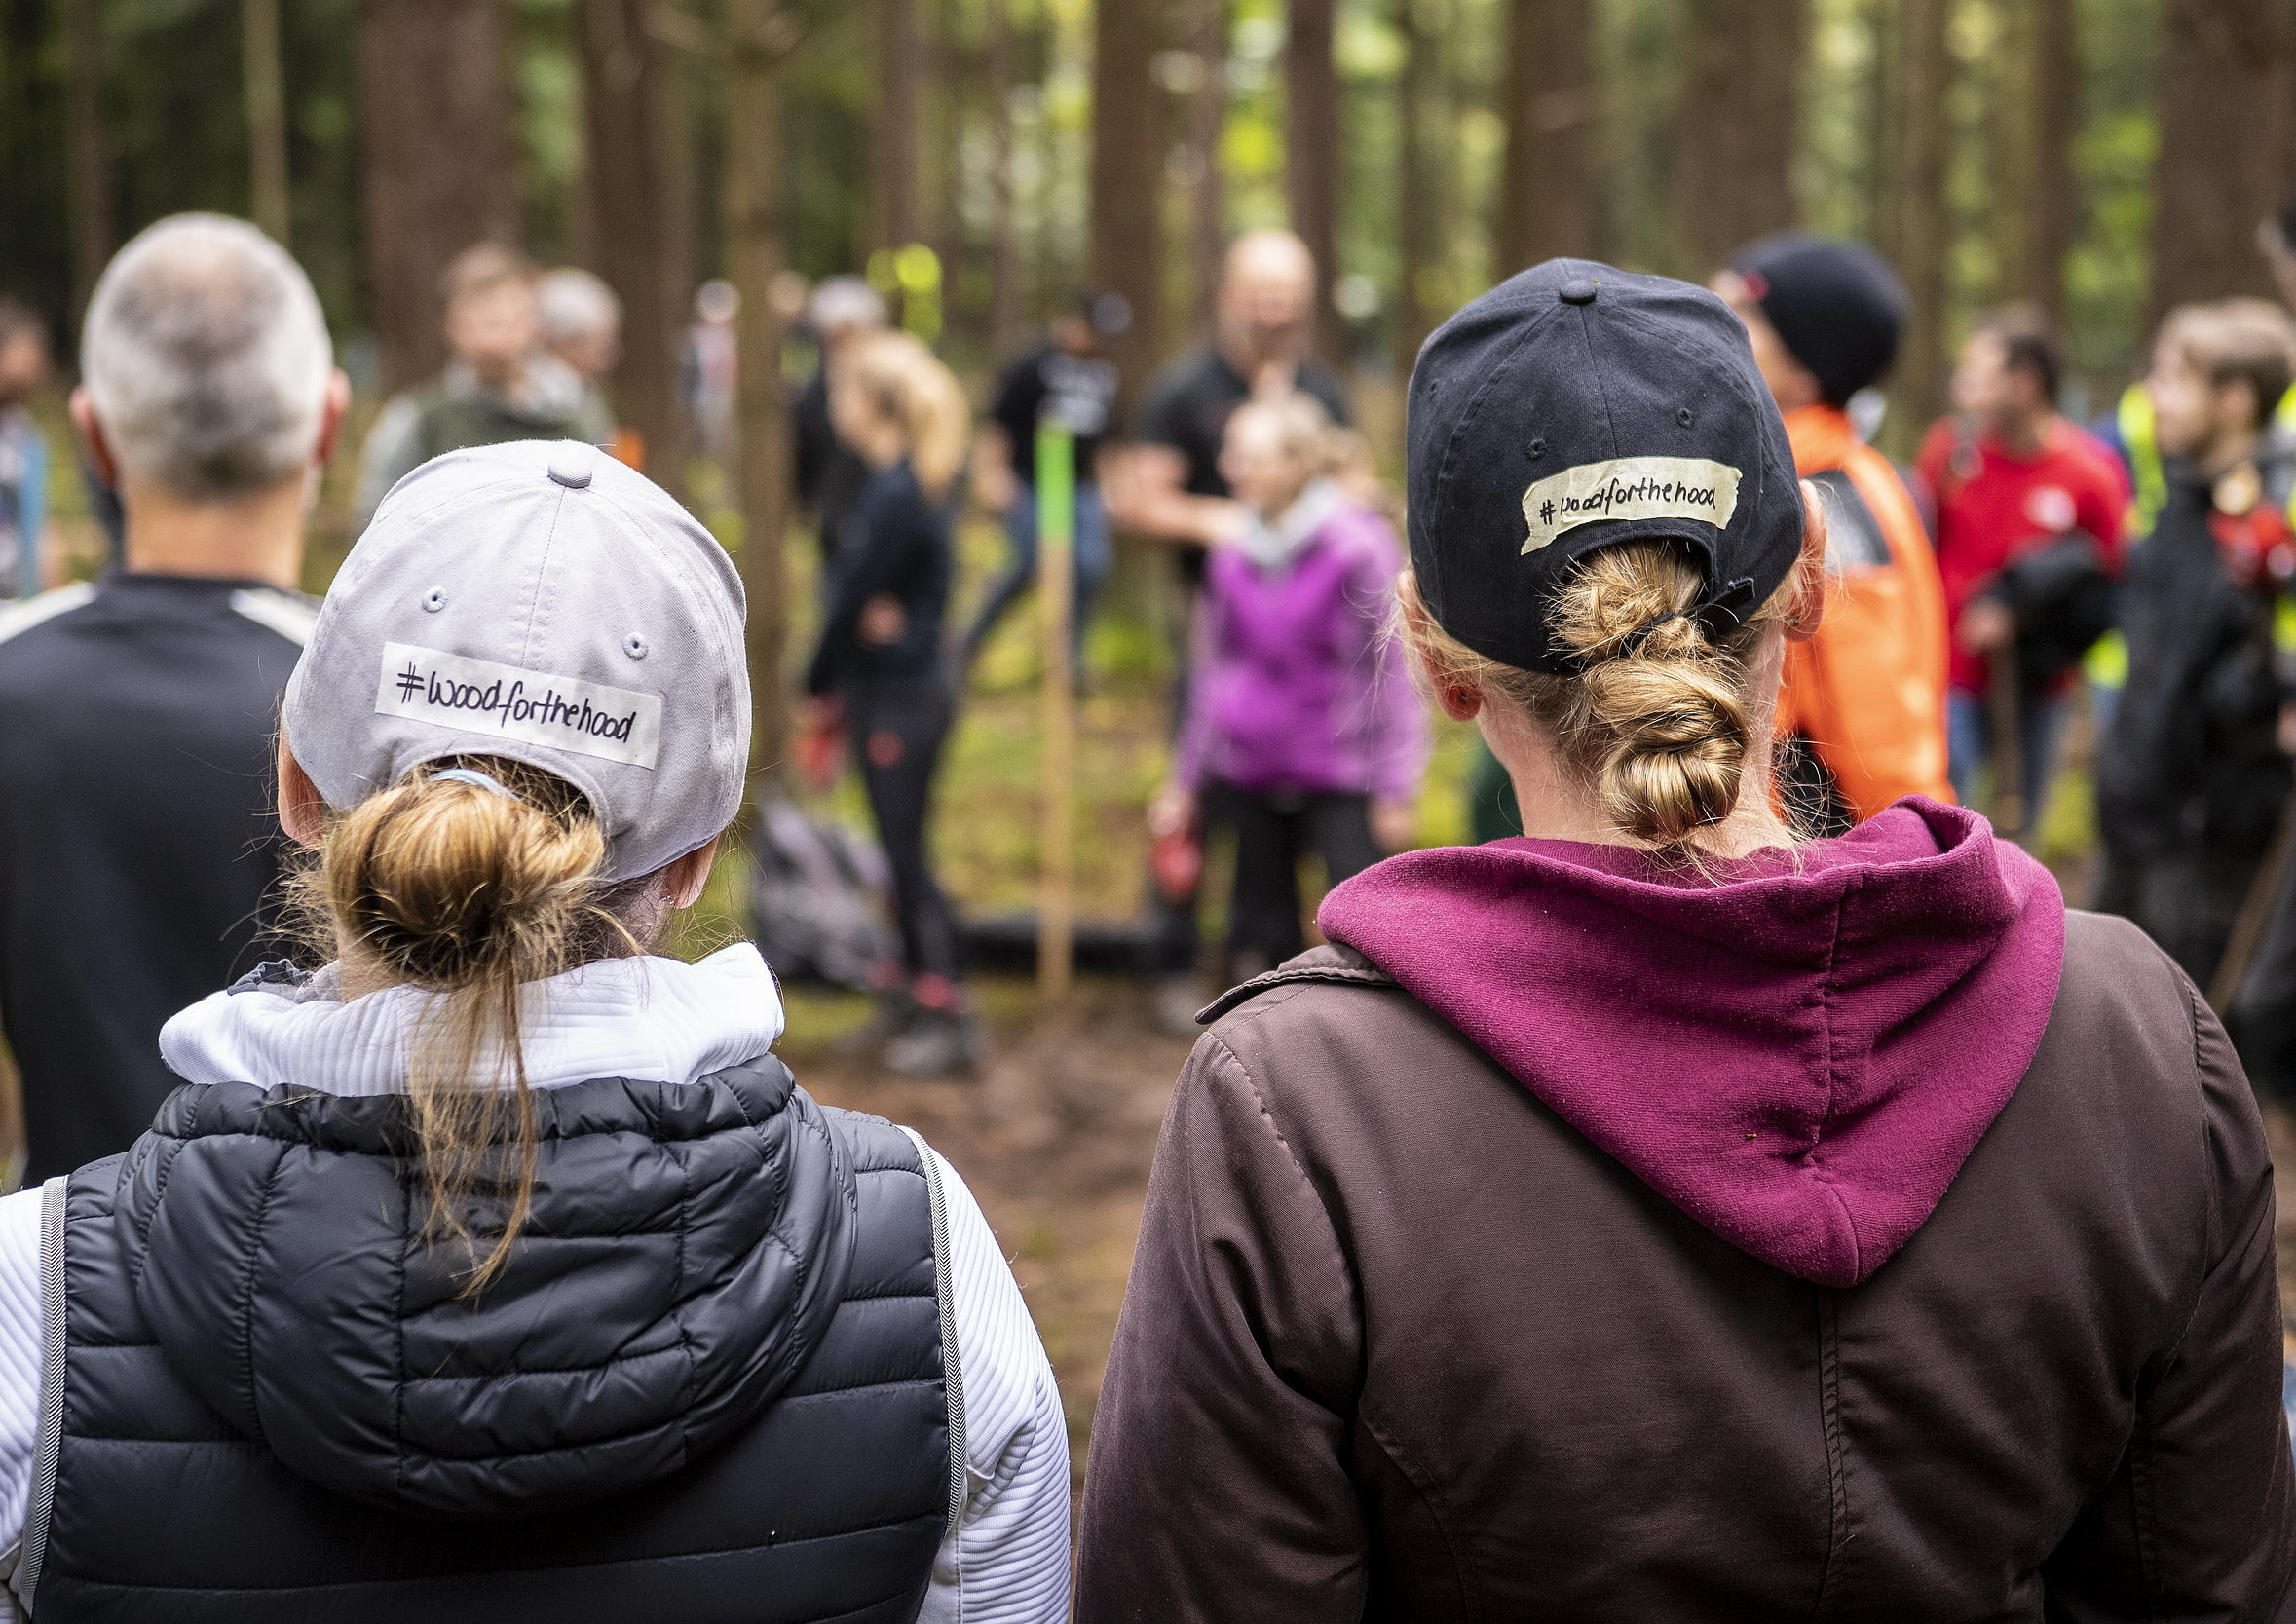 Zwei Frauen mit Schildkappen, auf deren Hinterkopf #woodforthehood steht.